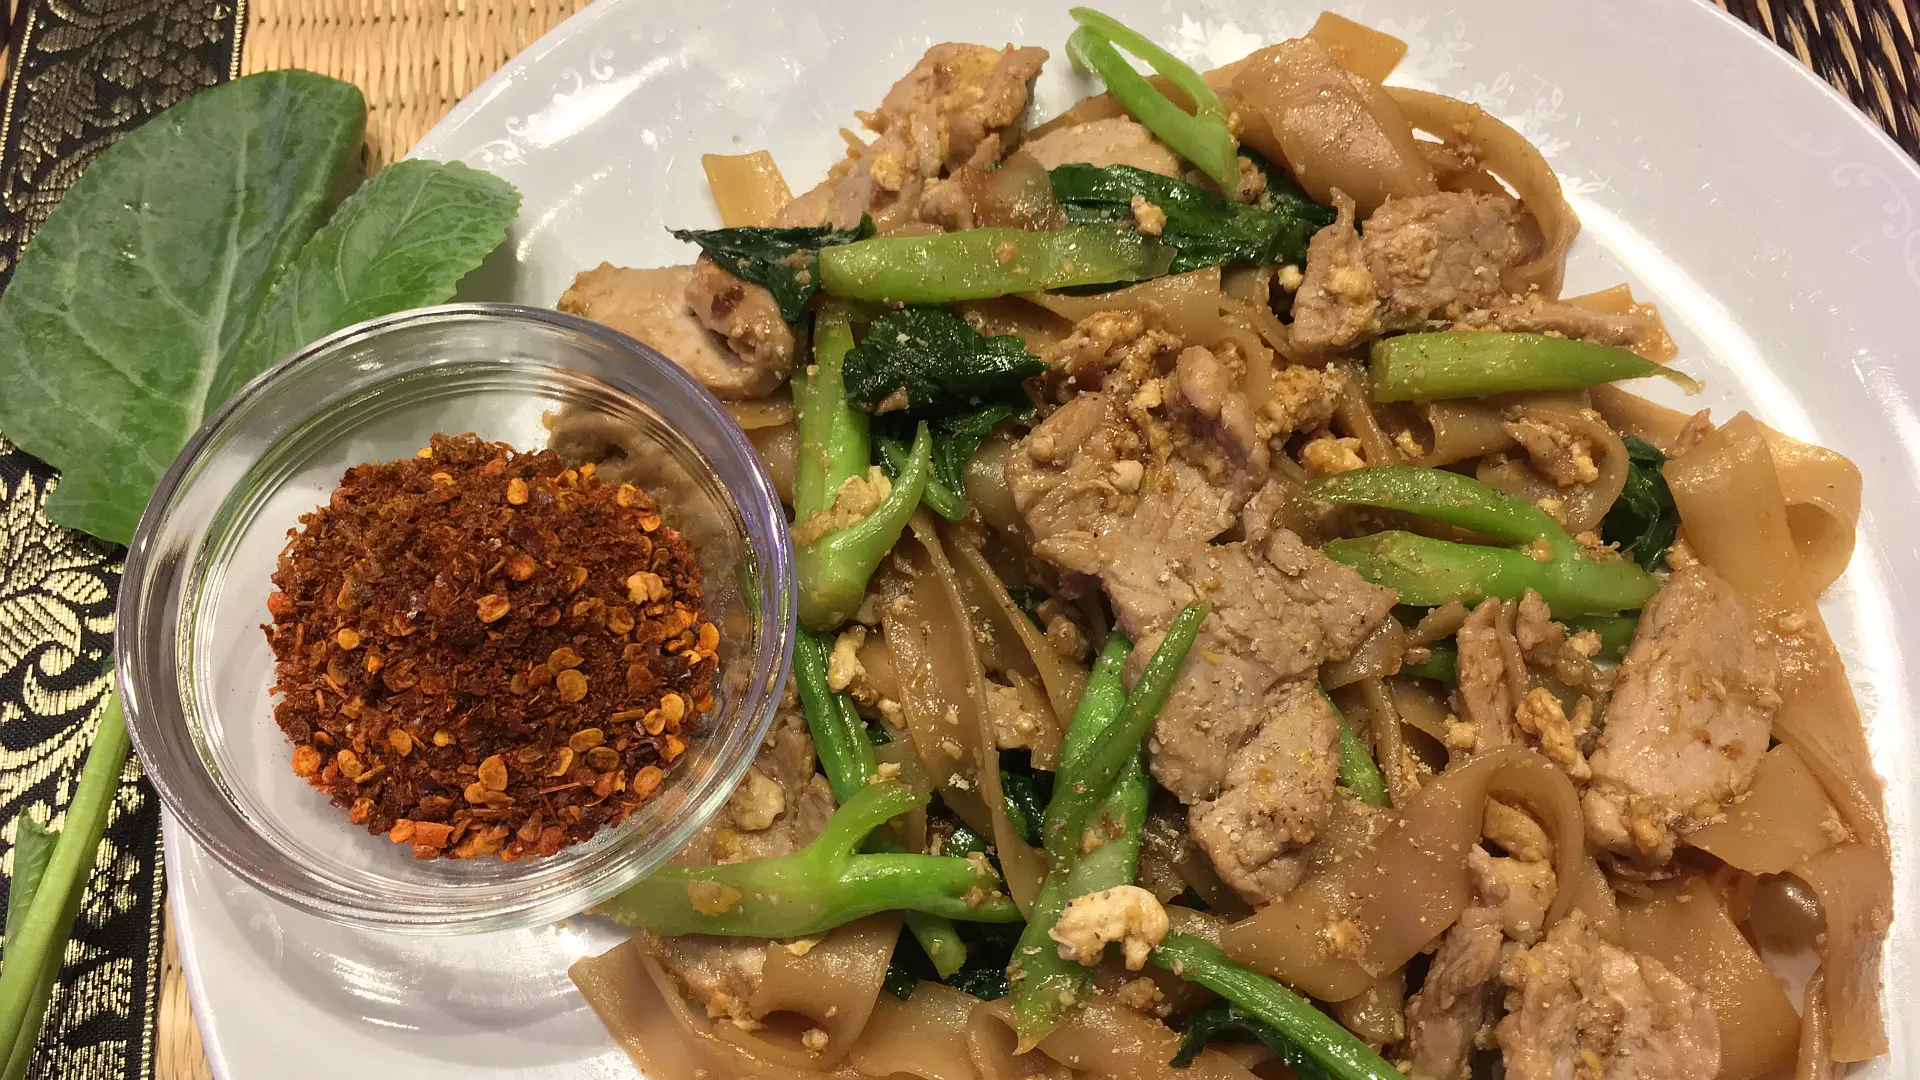 Gebratene Reisnudeln mit Schweinefleisch und chinesischem Brokkoli – ผัดซีอิ๊ว (Pad Sii Eiw)